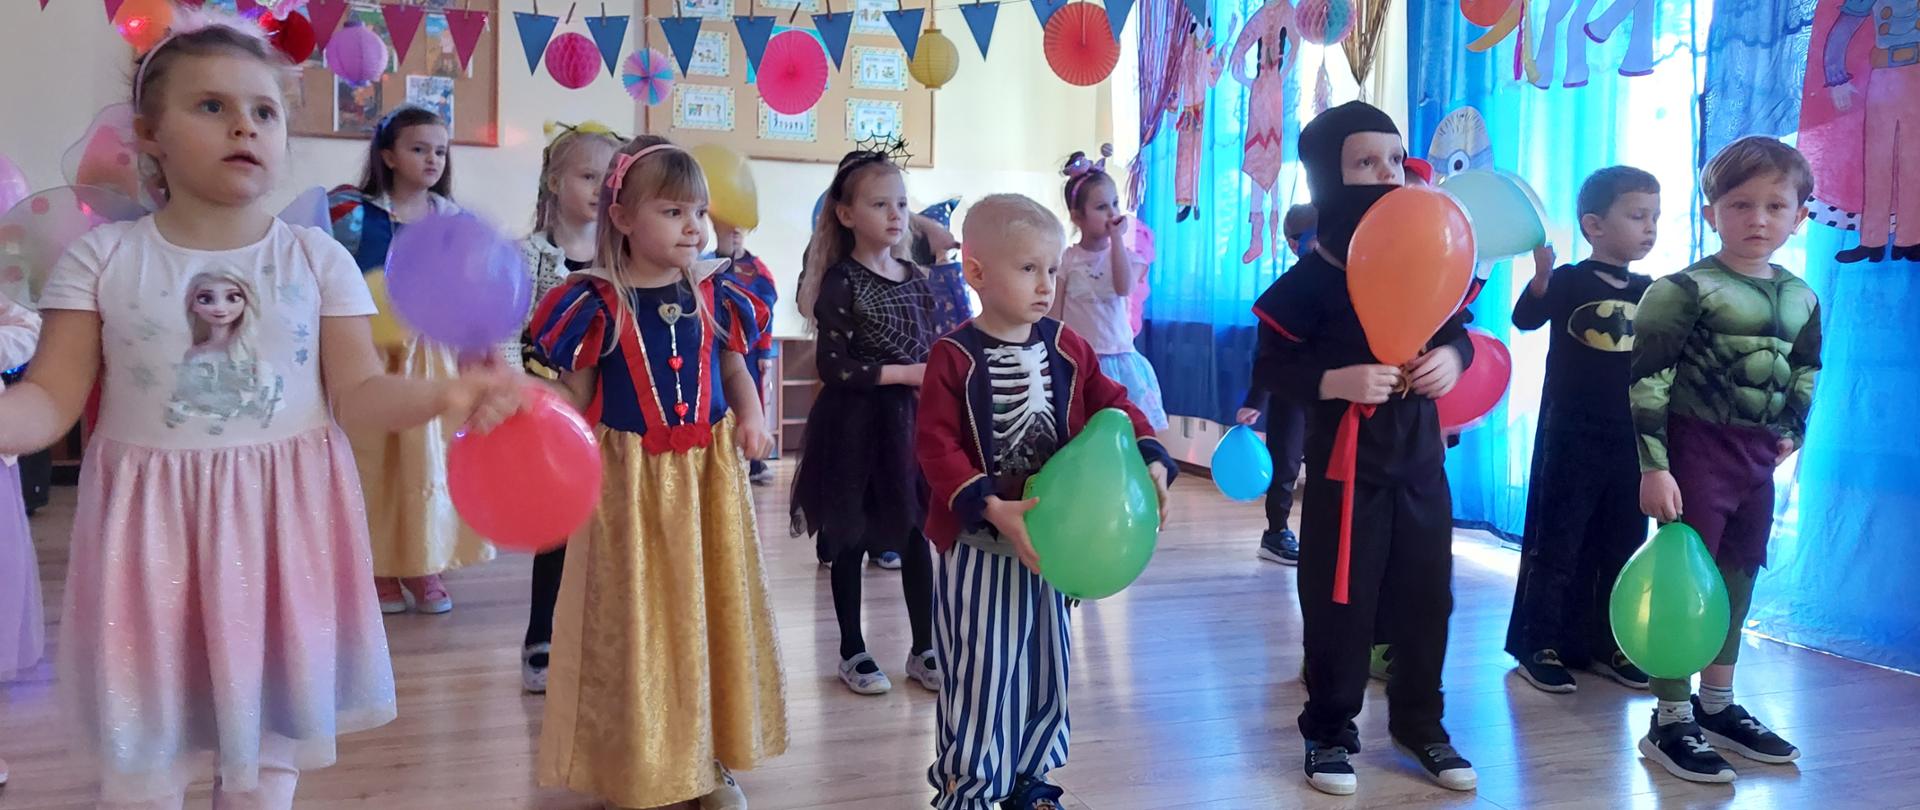 Wspólny taniec przedszkolaków z balonami do przygotowanego układu tanecznego.